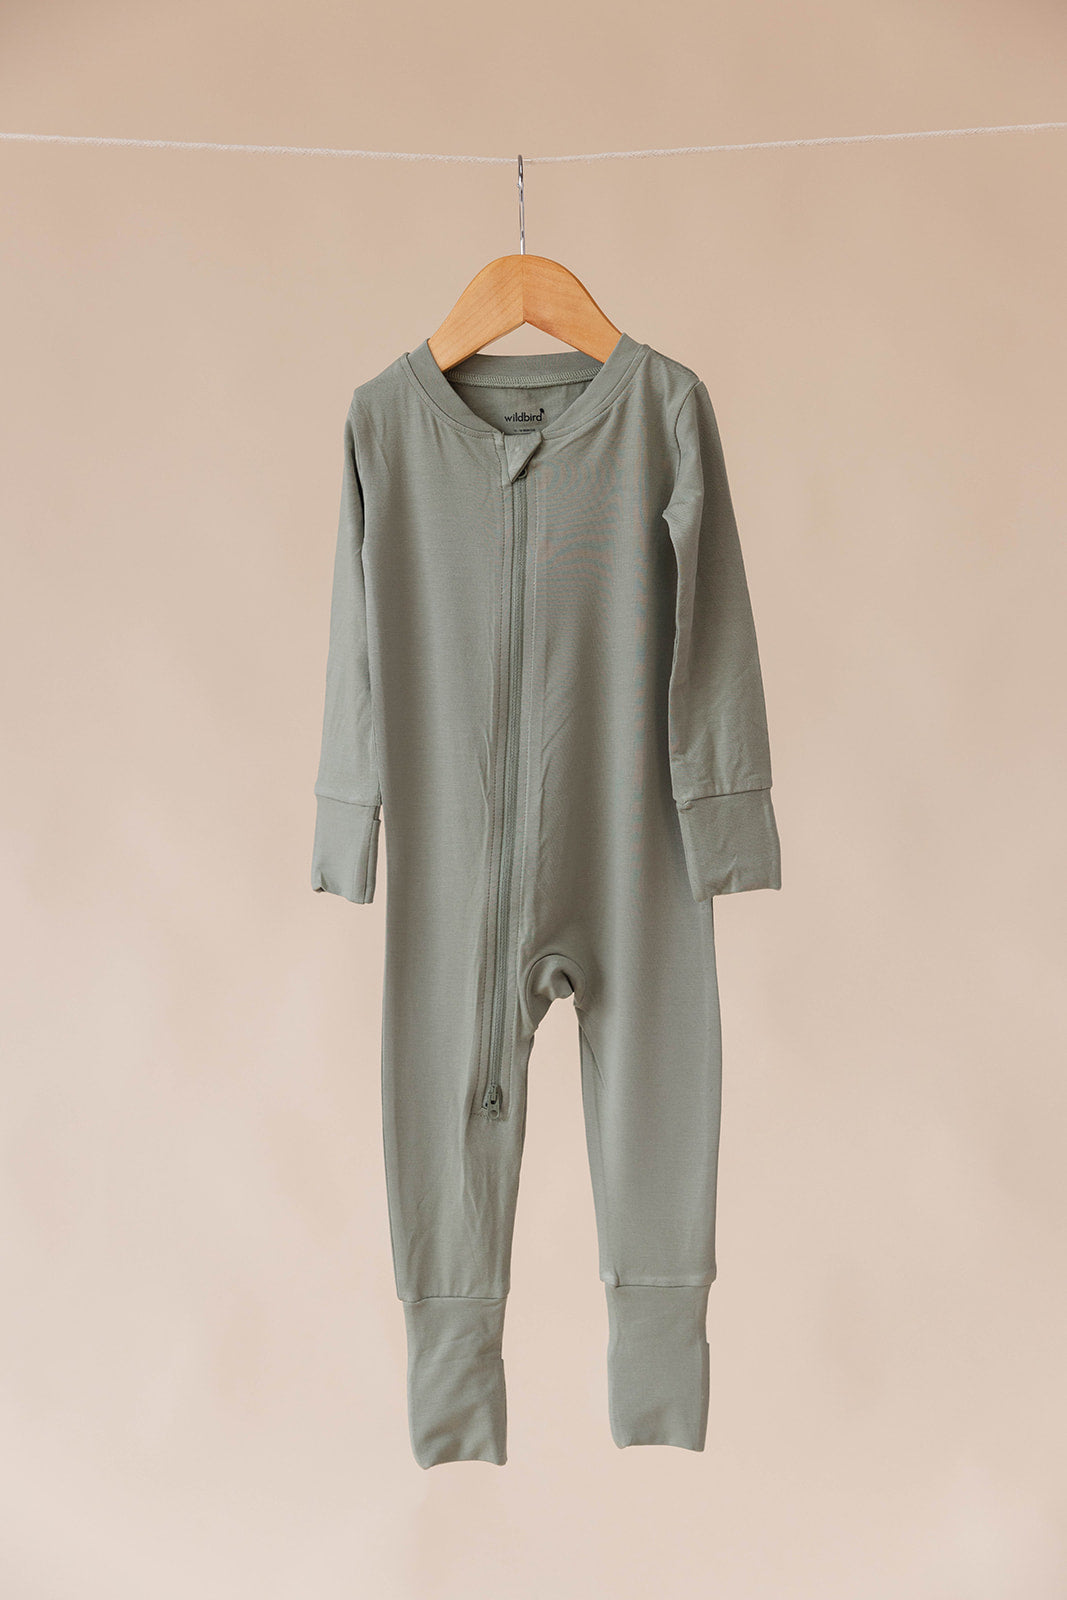 Acadian - CloudBlend™ Footless Pajamas